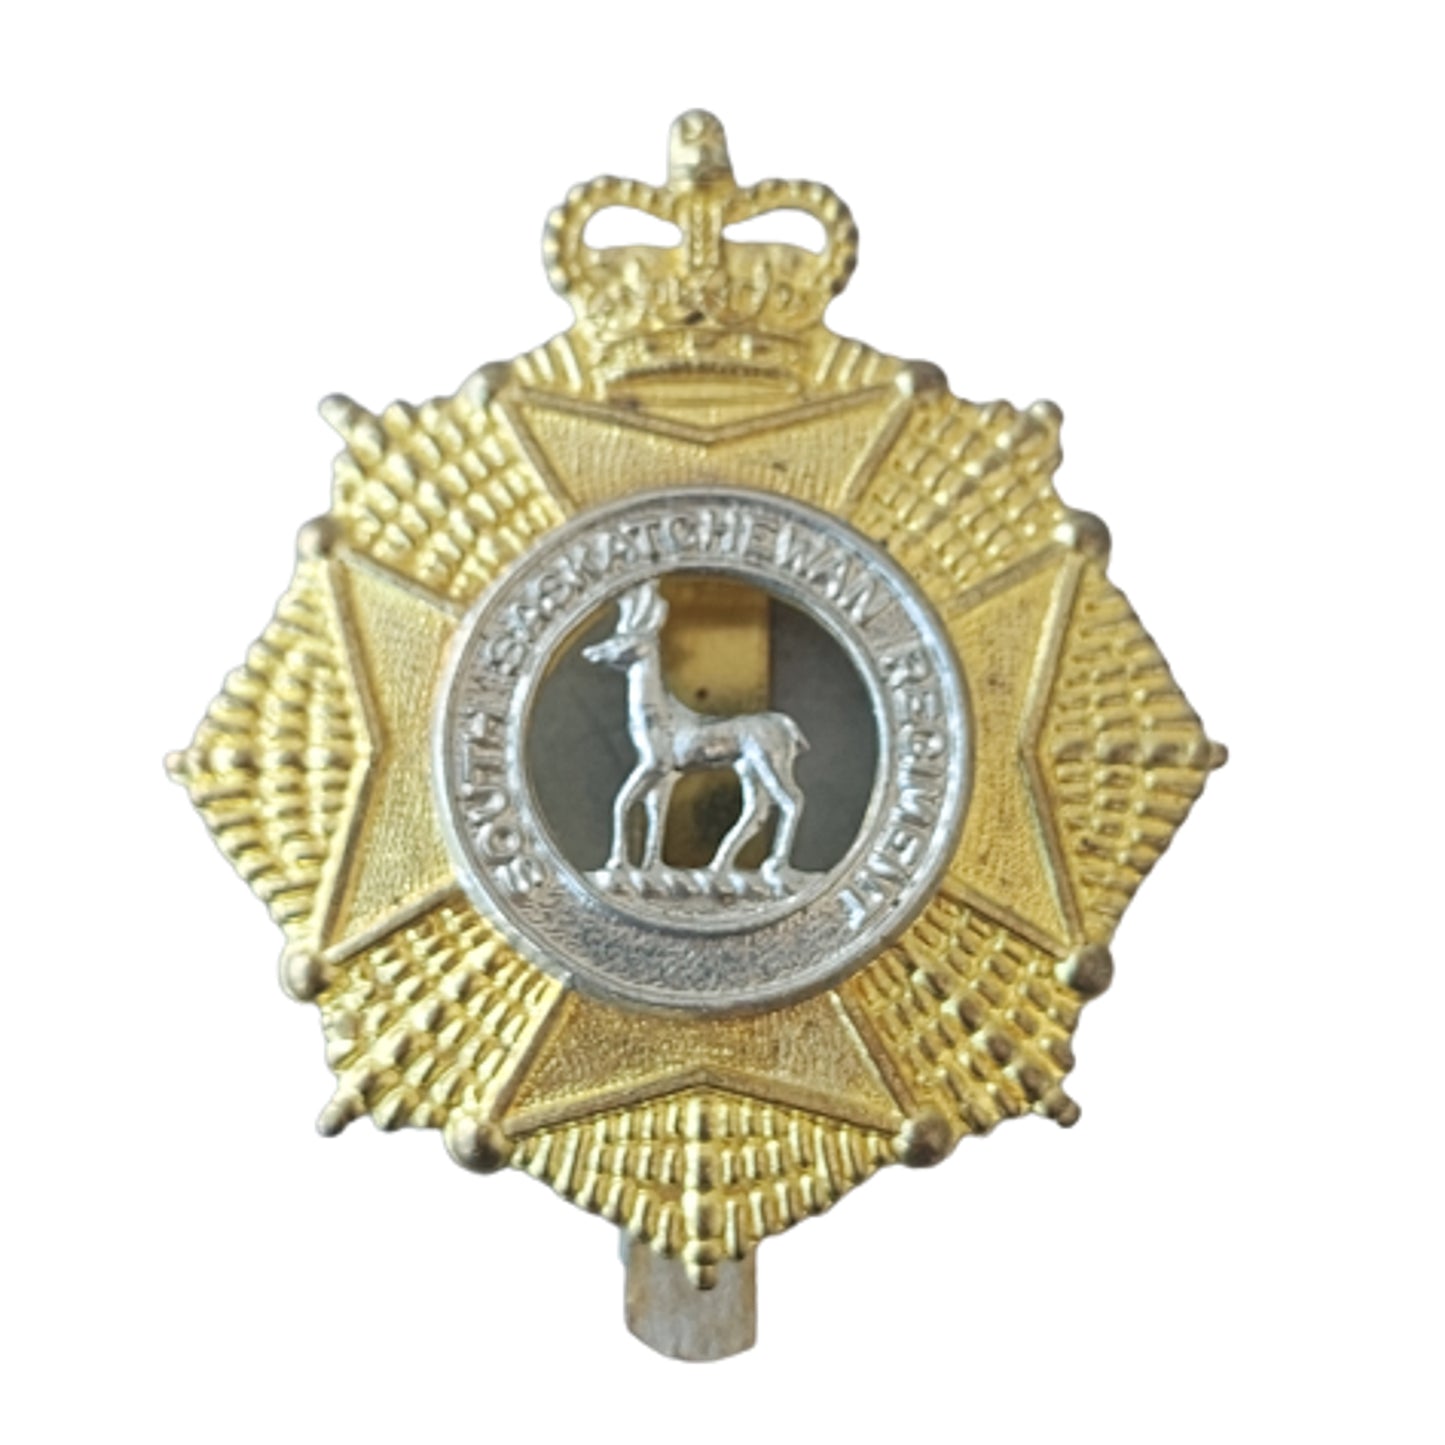 Canadian Forces SSR South Saskatchewan Regiment Cap Badge